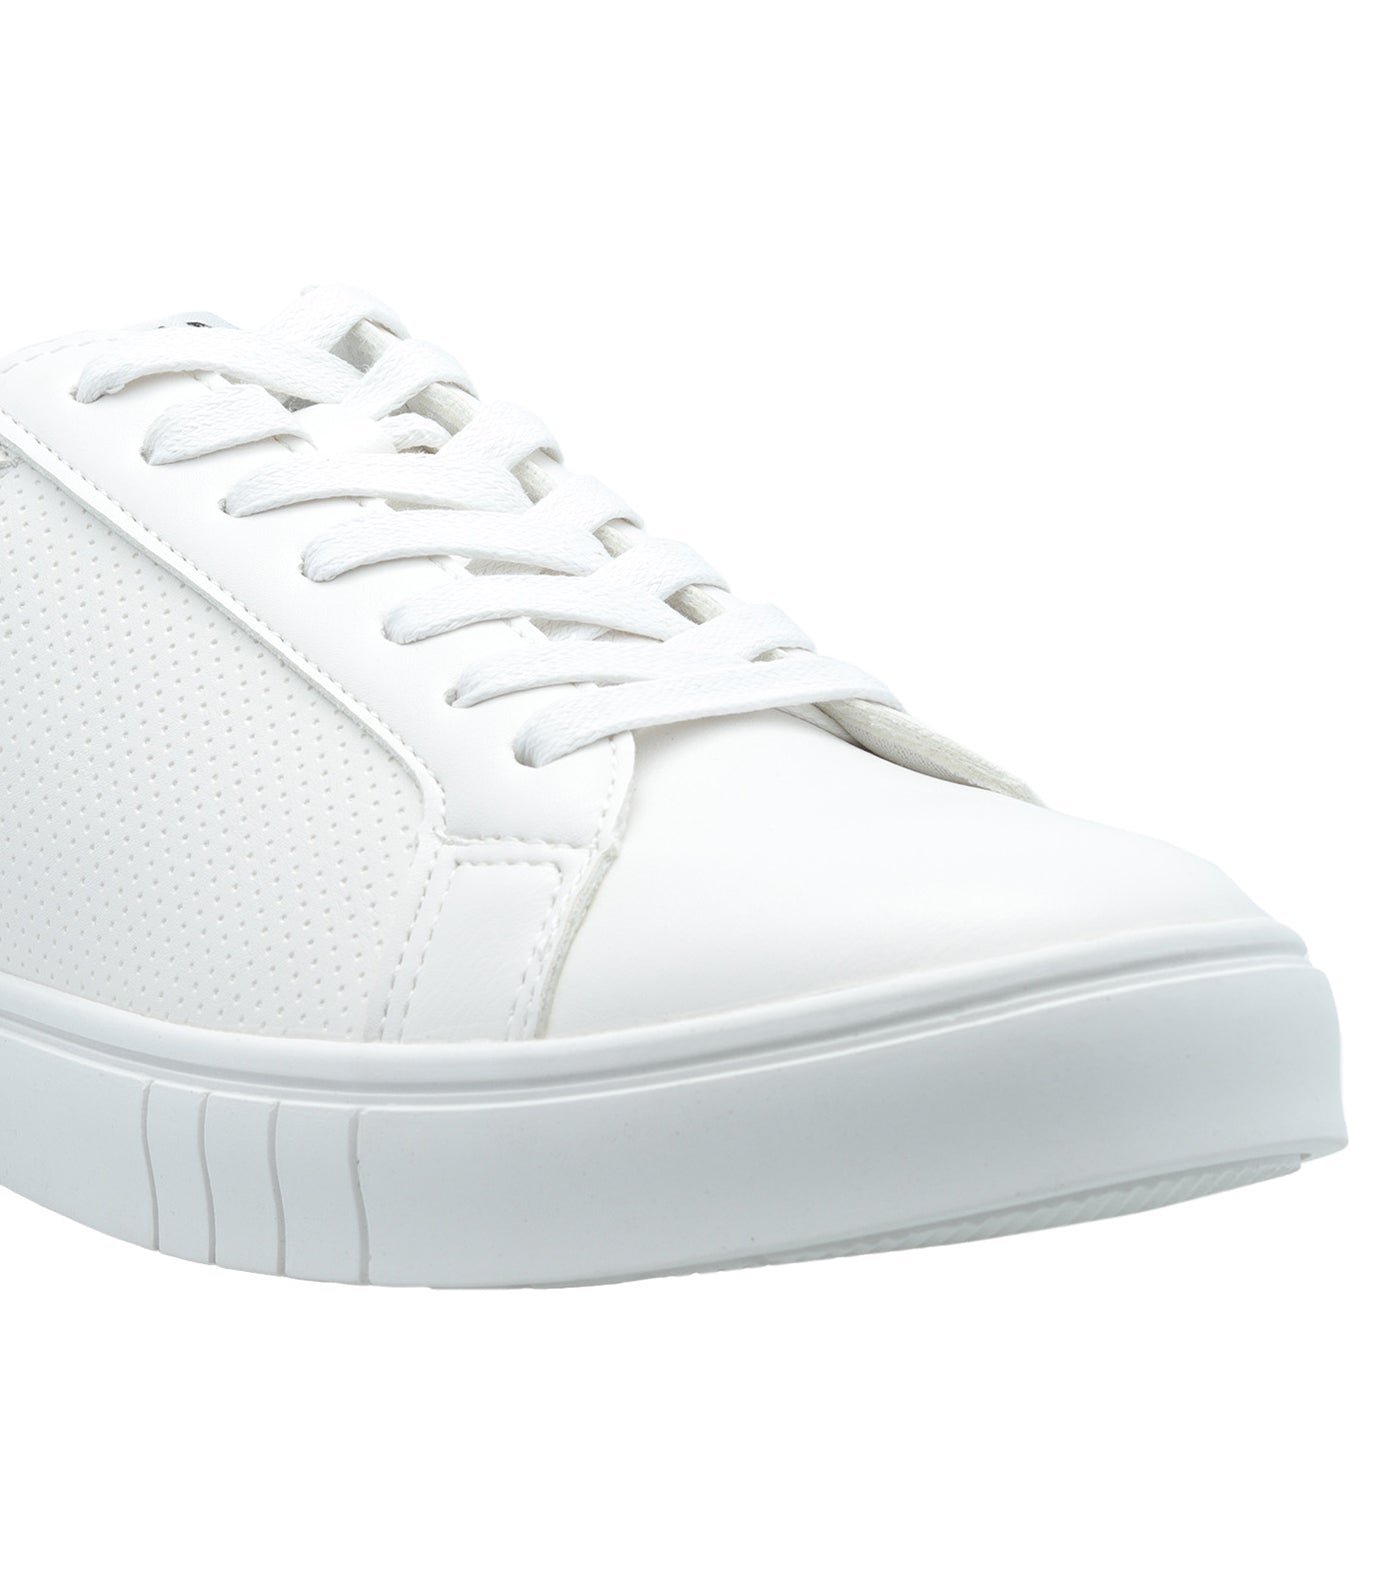 Reid Lace Up Sneaker White